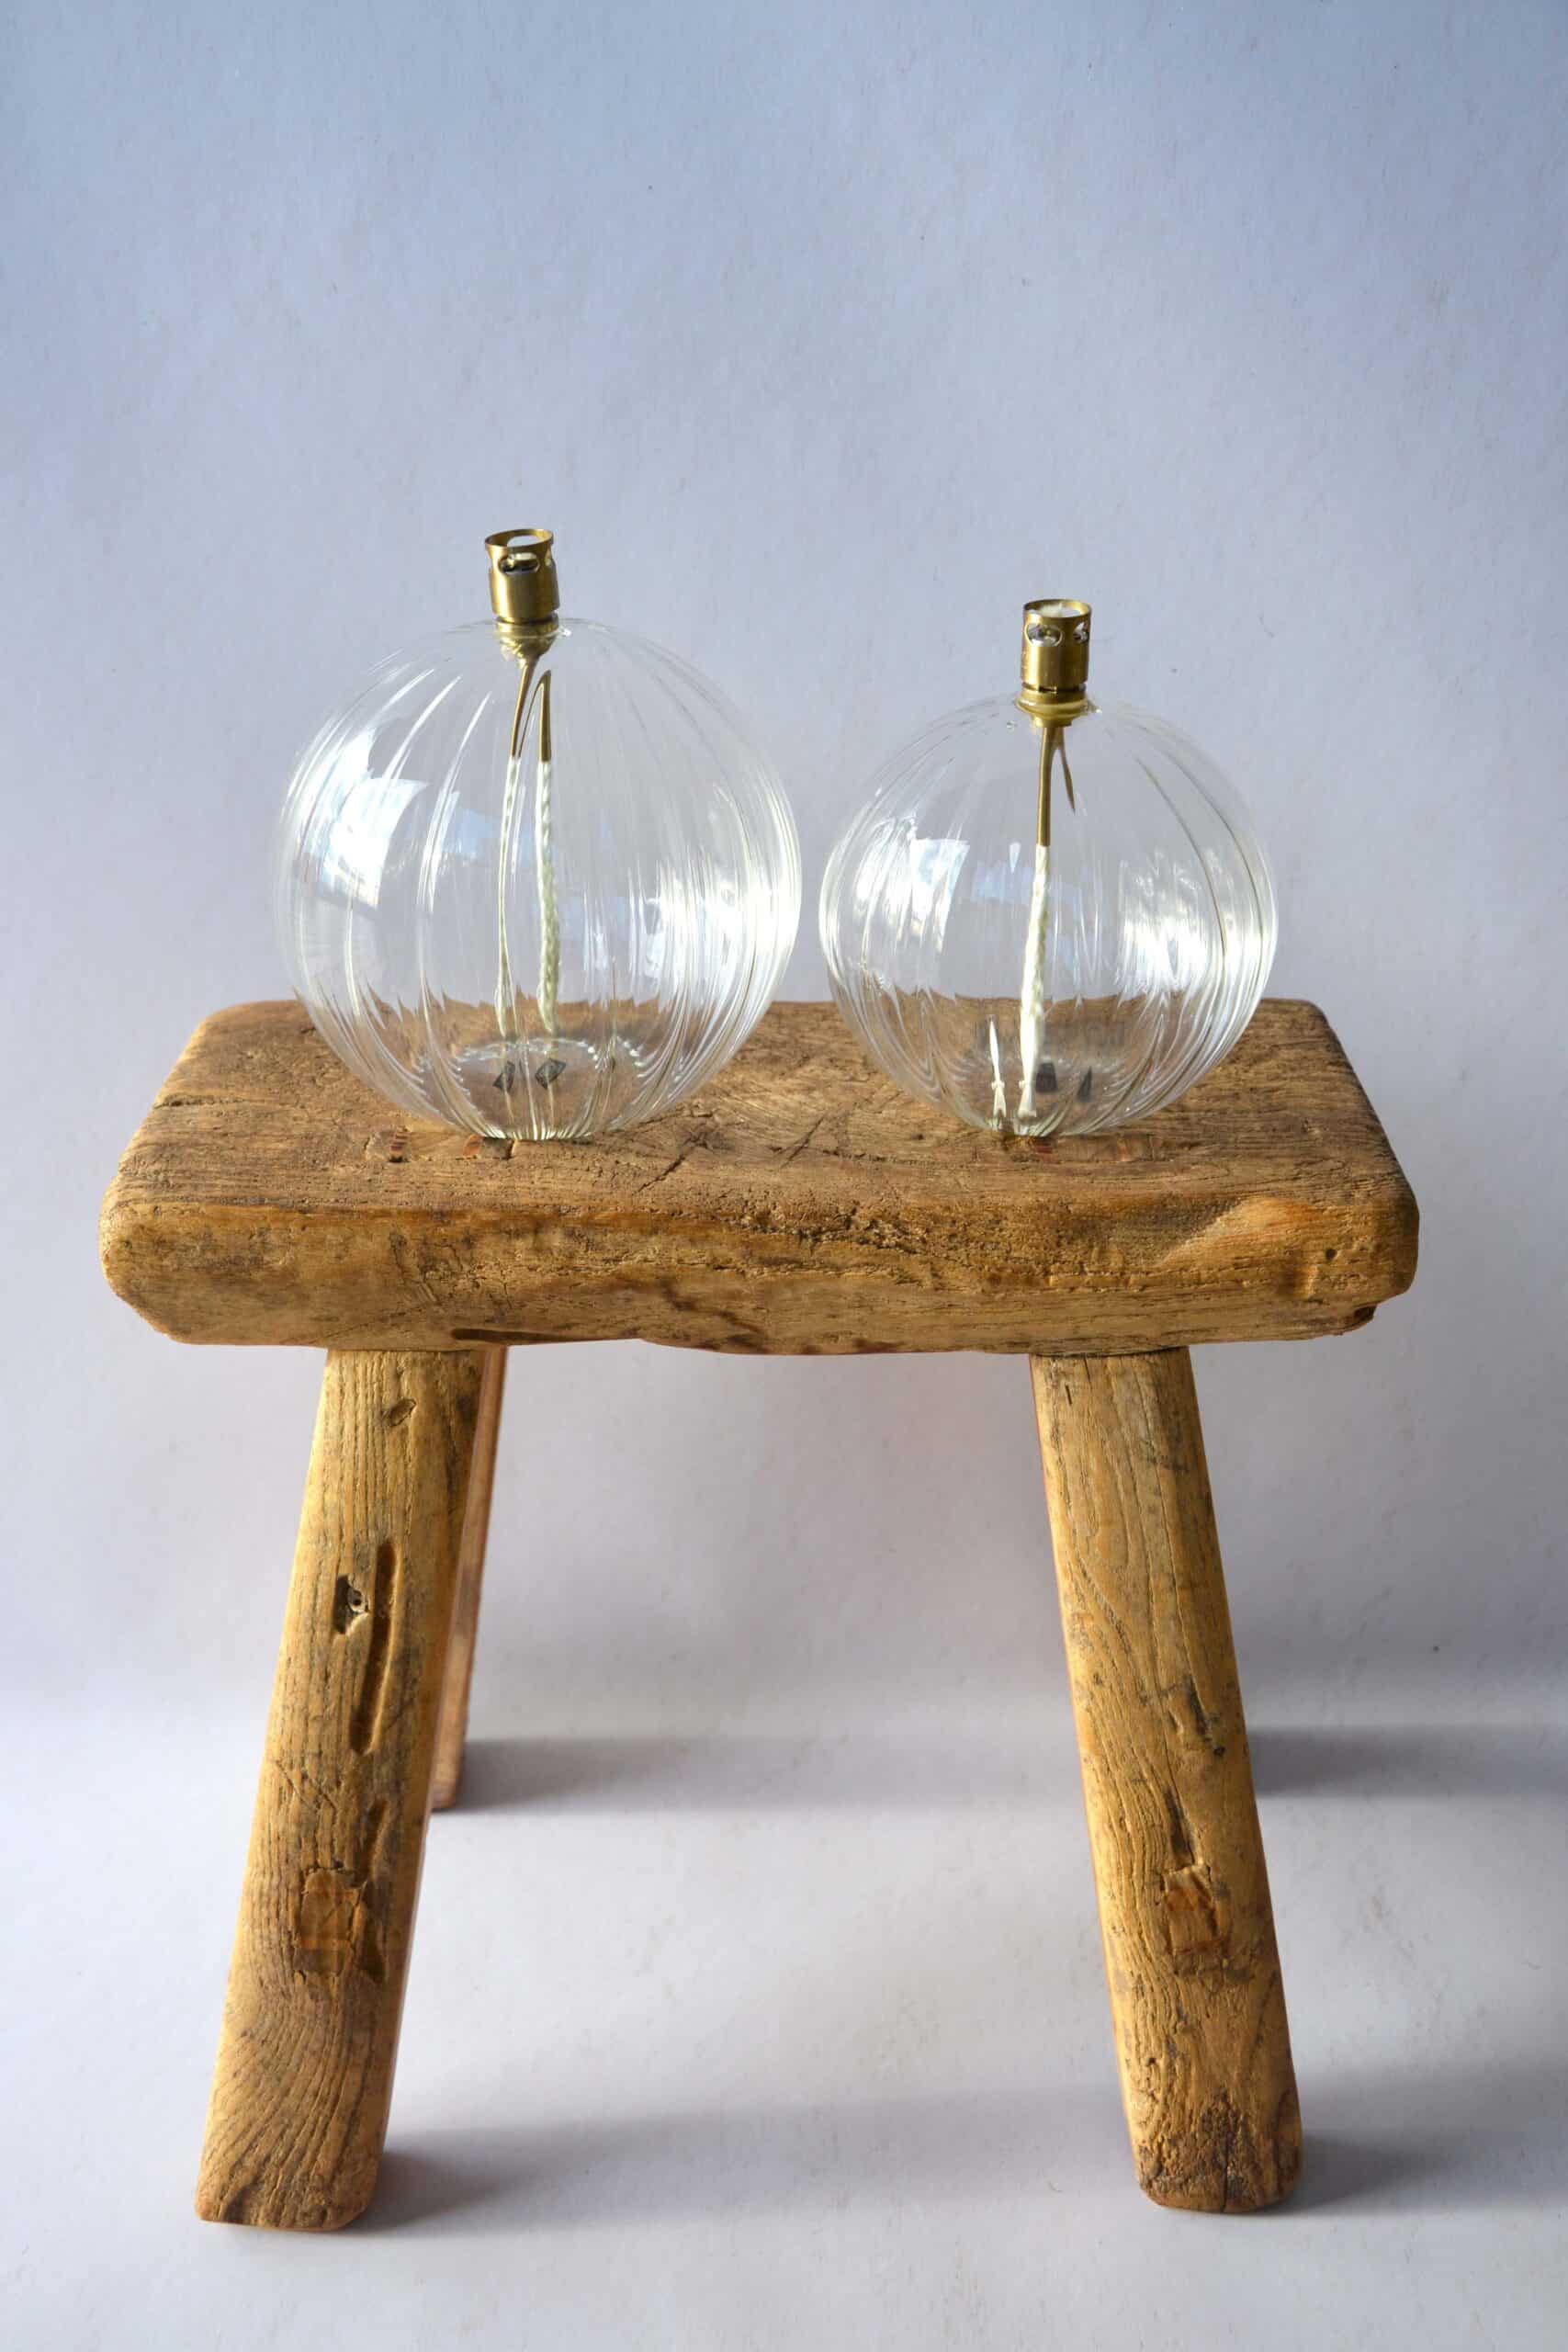 Lot de 3 Bougies/Lampes à Huile ronde en verre - La Maison Pernoise